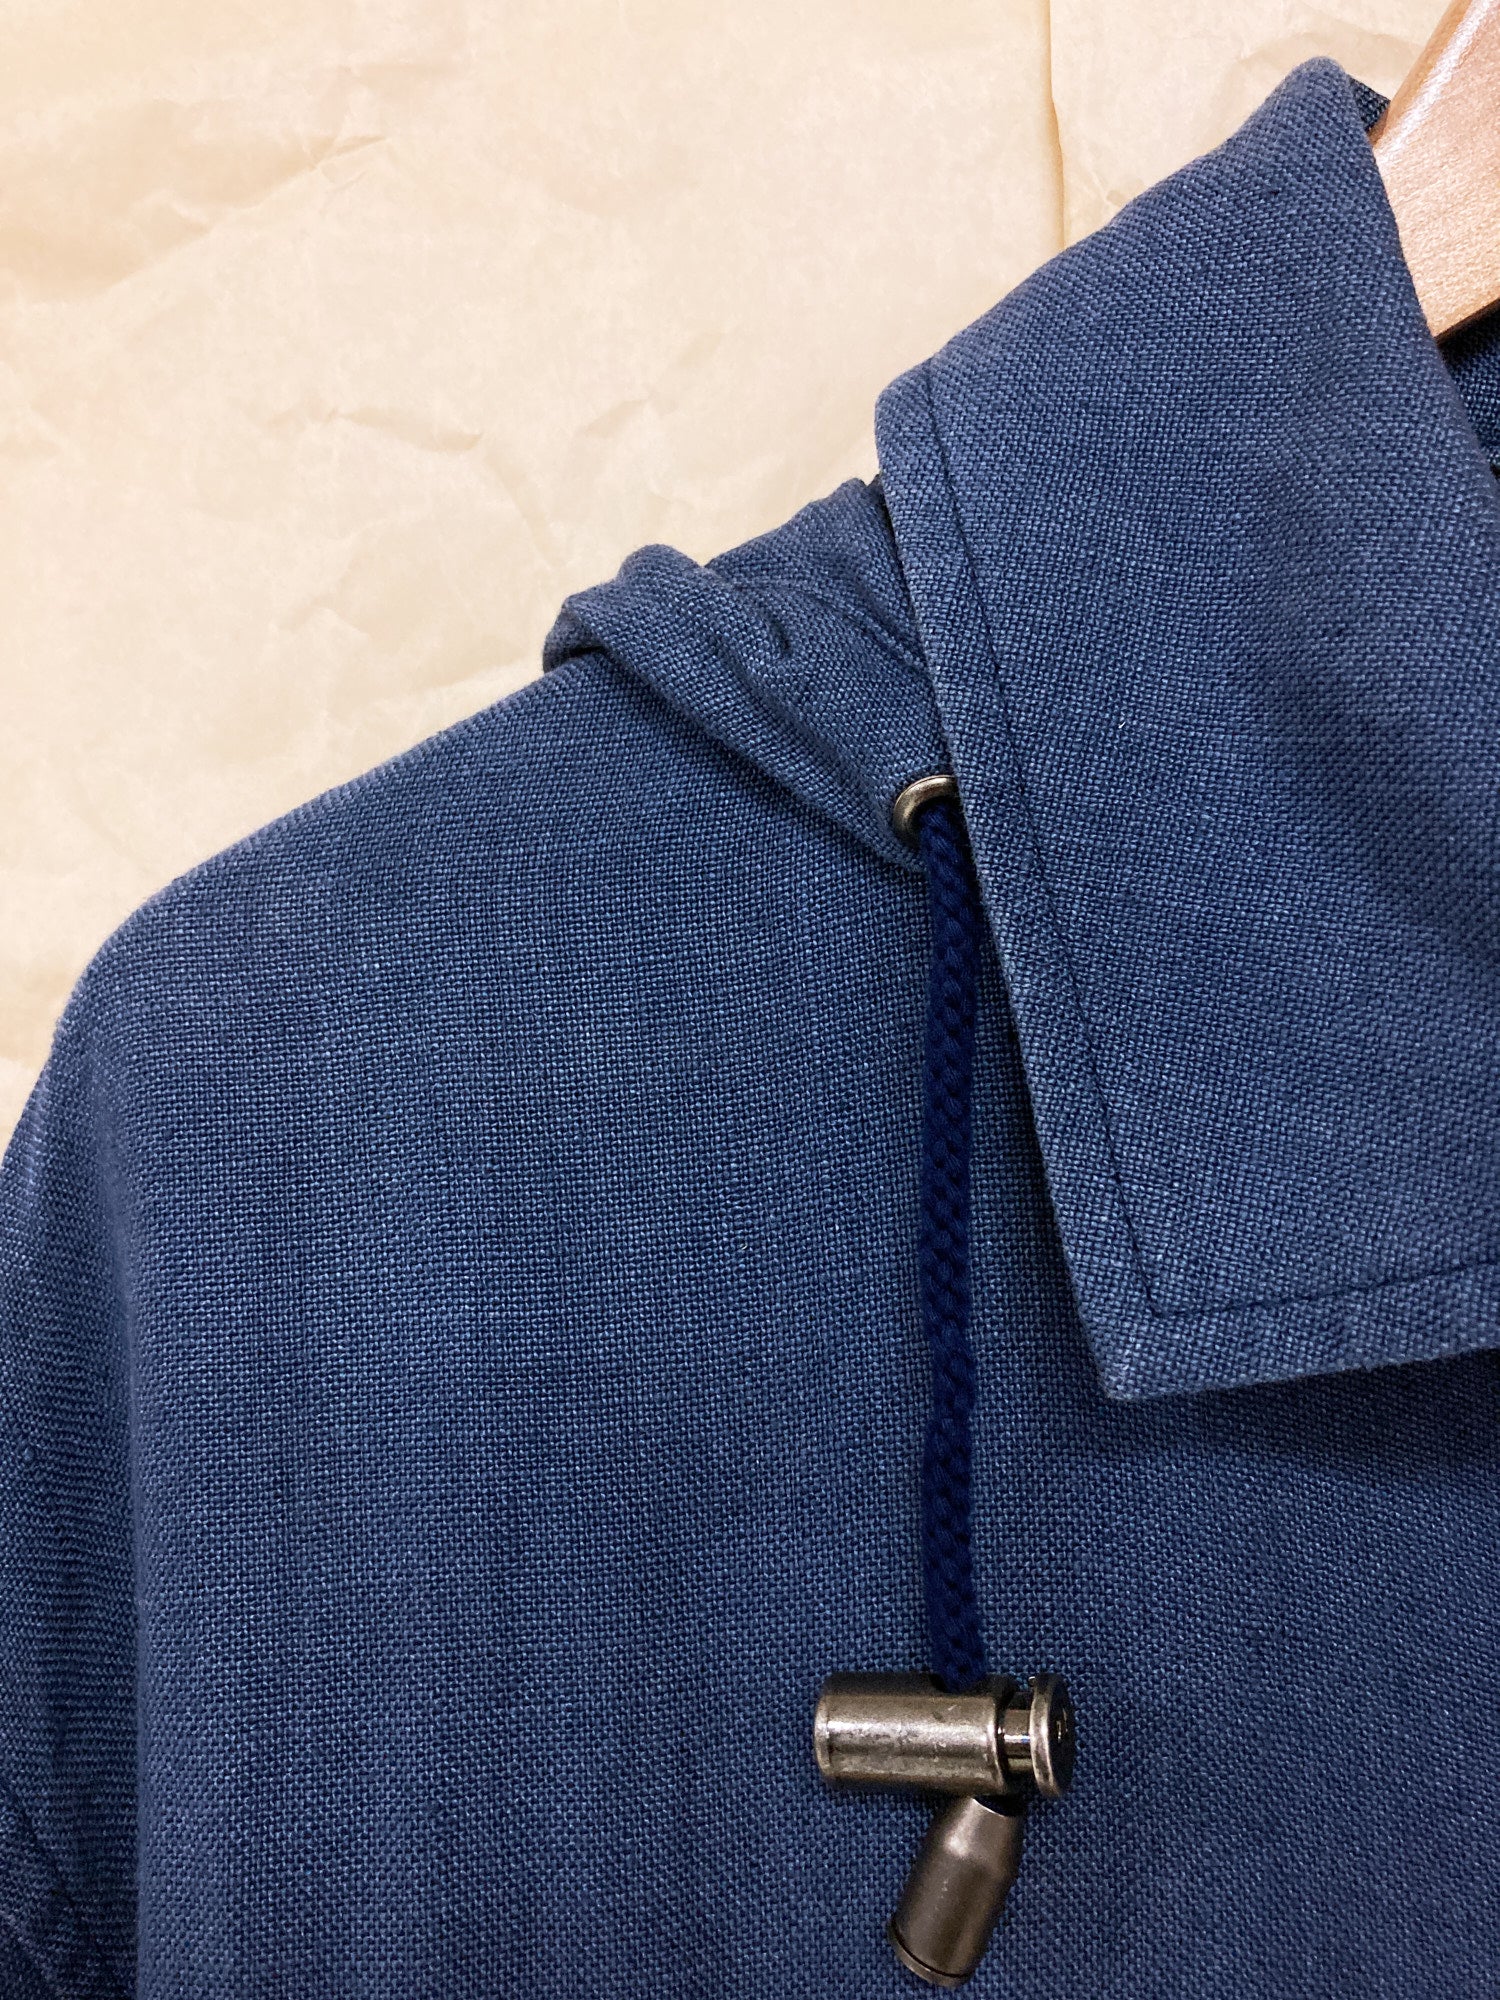 Kenzo Paris 1980s indigo linen hooded zip jacket - M L S